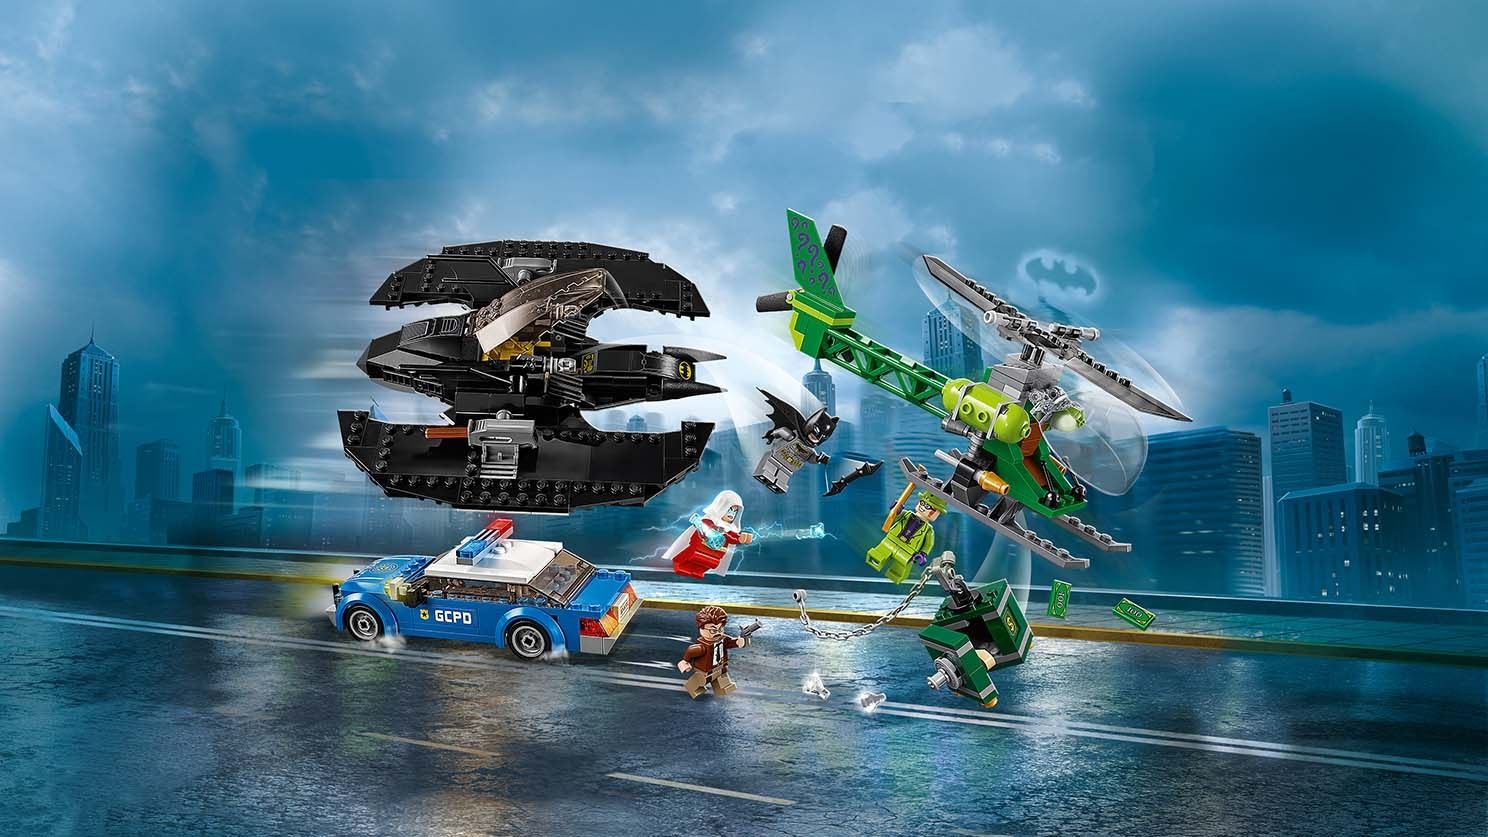 LEGO Super Heroes 76120 Batman™: Batwing und der Riddler™-Überfall LEGO_76120_WEB_SEC01_1488.jpg